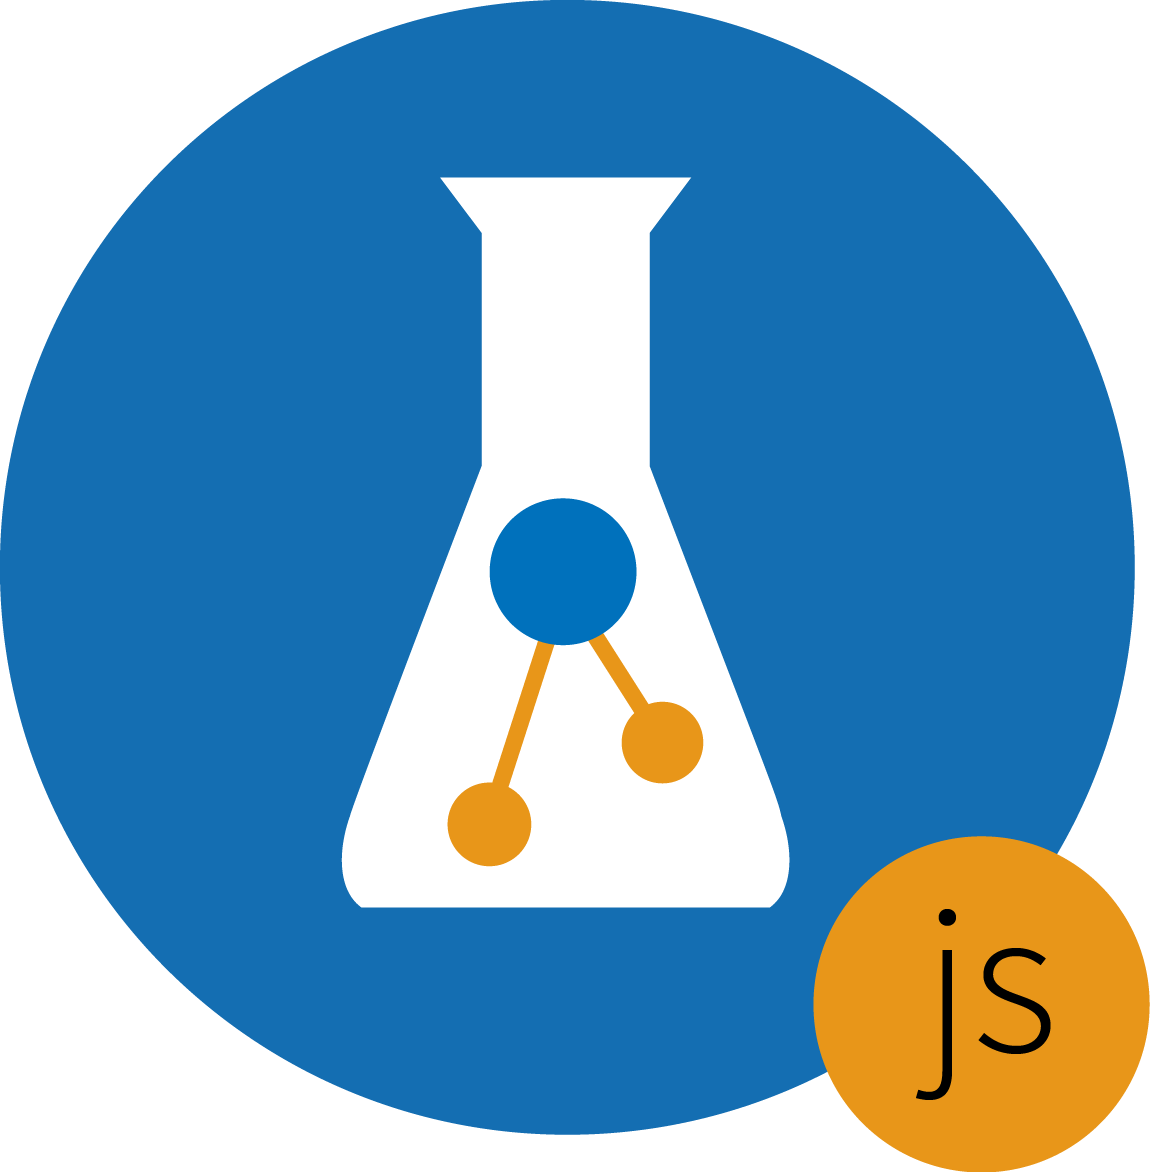 GitHub - alancnet/little-alchemy: JavaScript version of Little Alchemy